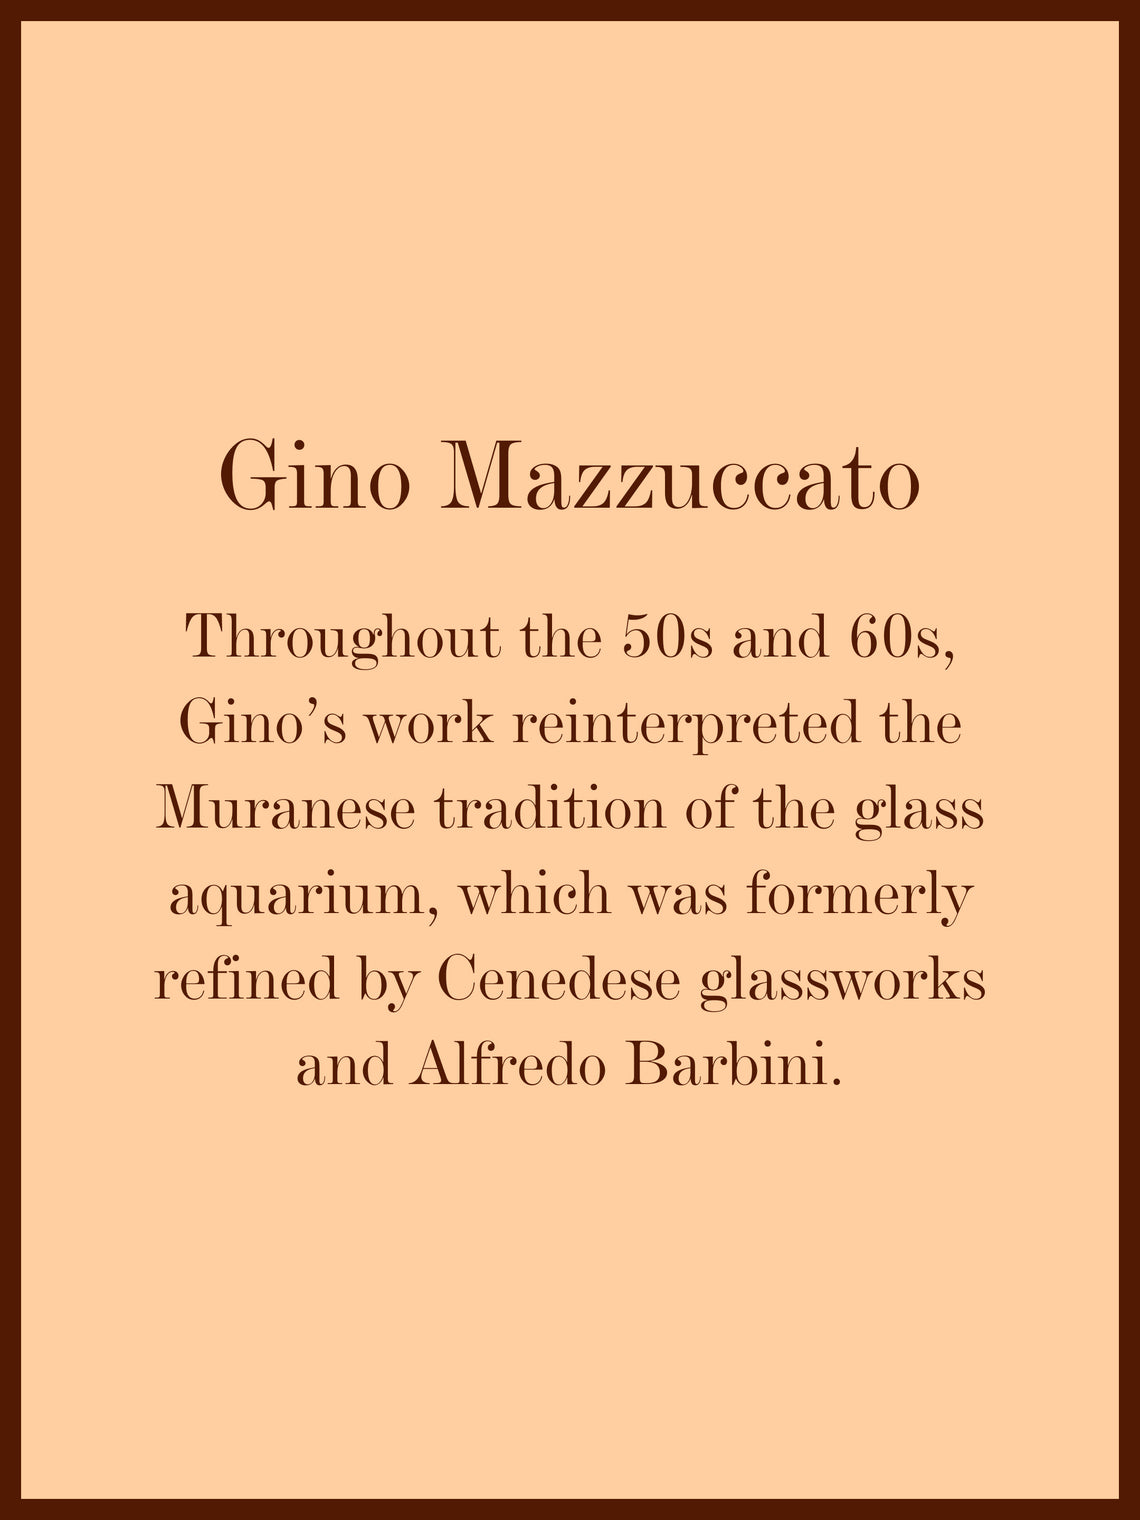 1950s Mazzuccato Aquarium Murano Glass Vase